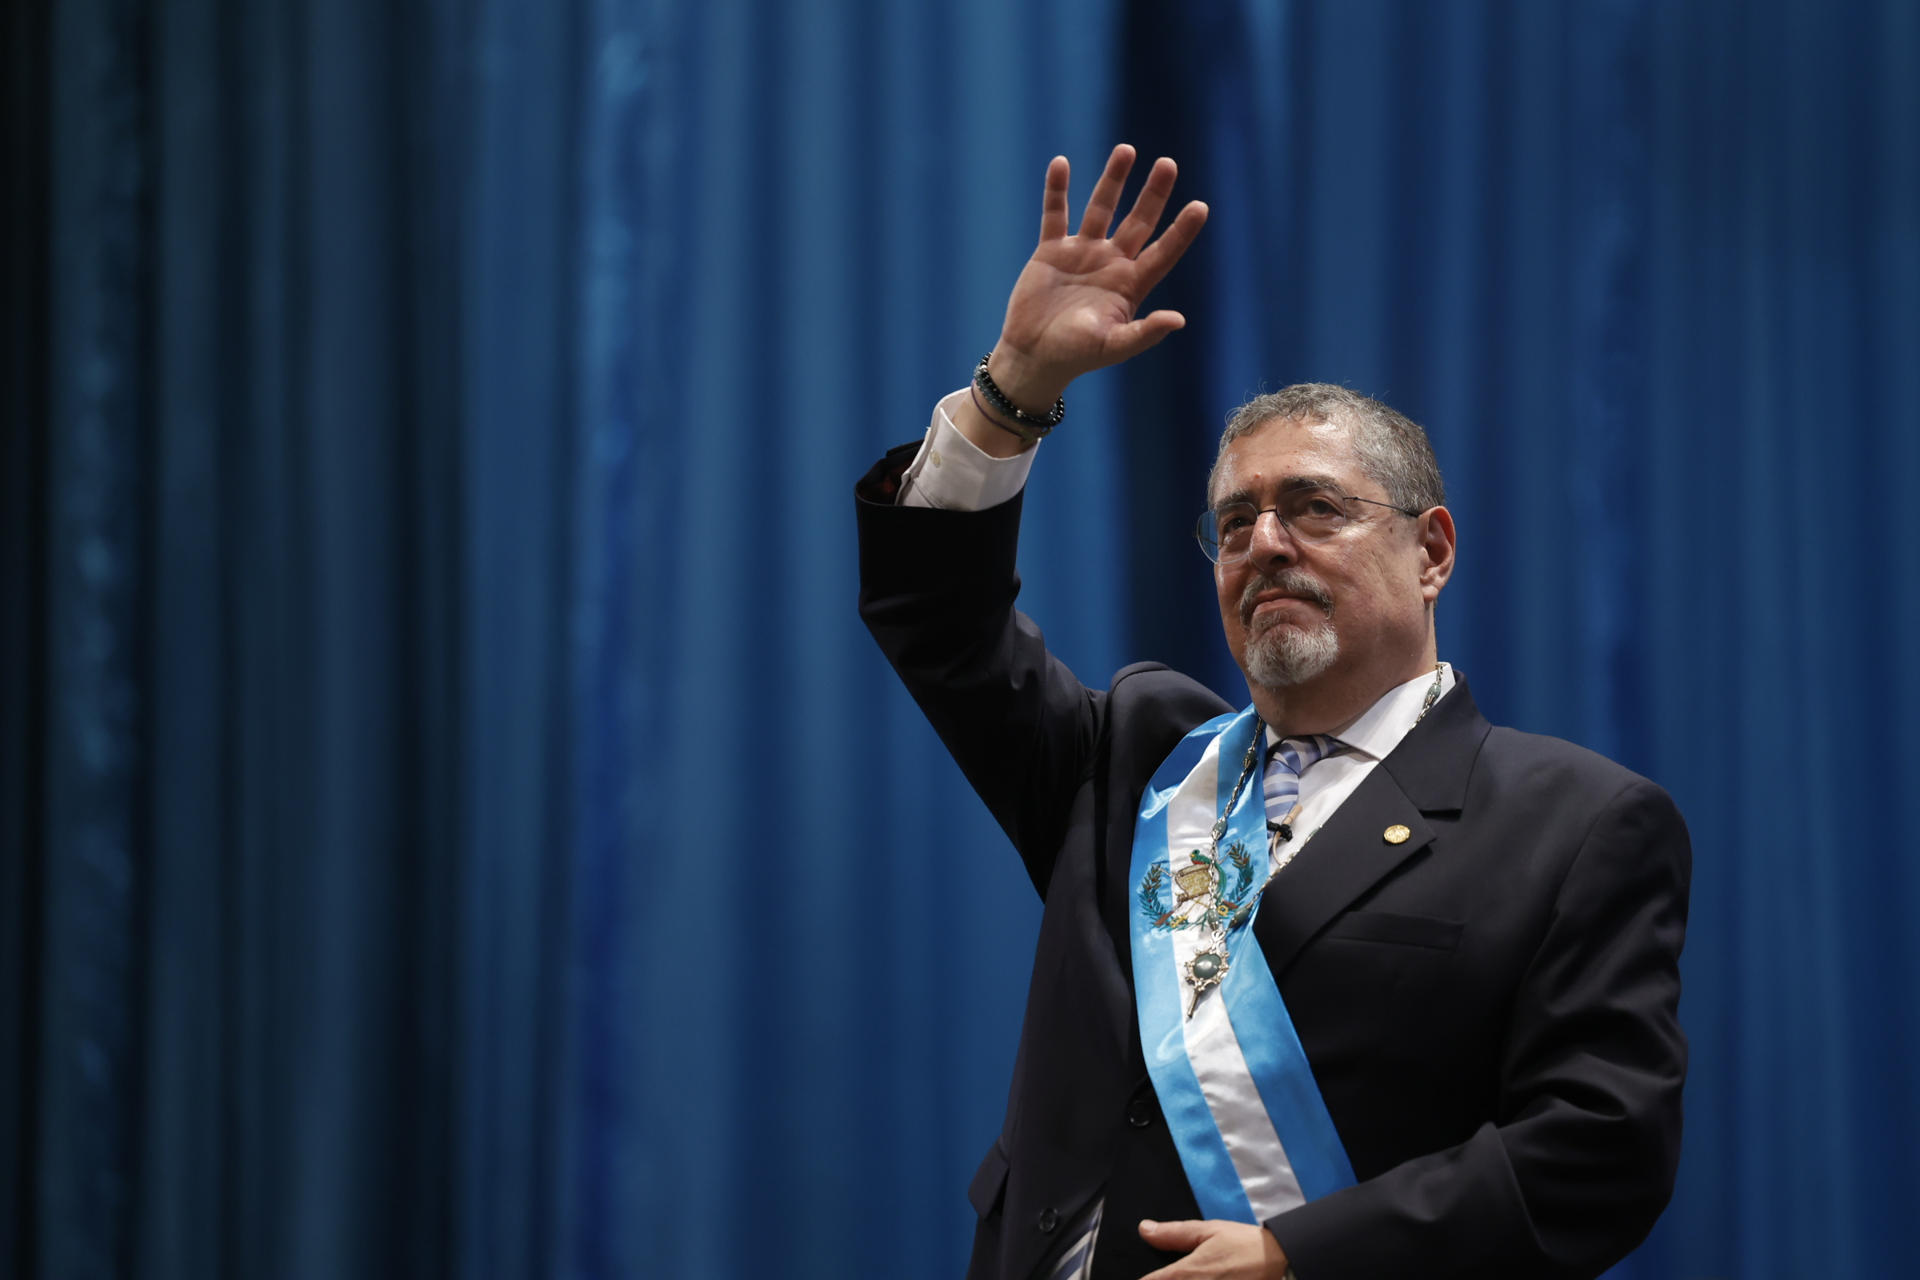 El nuevo presidente de Guatemala, Bernardo Arévalo de León saluda, durante su ceremonia de investidura hoy, en el Centro Cultural Miguel Ángel Asturias, en Ciudad de Guatemala (Guatemala). EFE/ David Toro